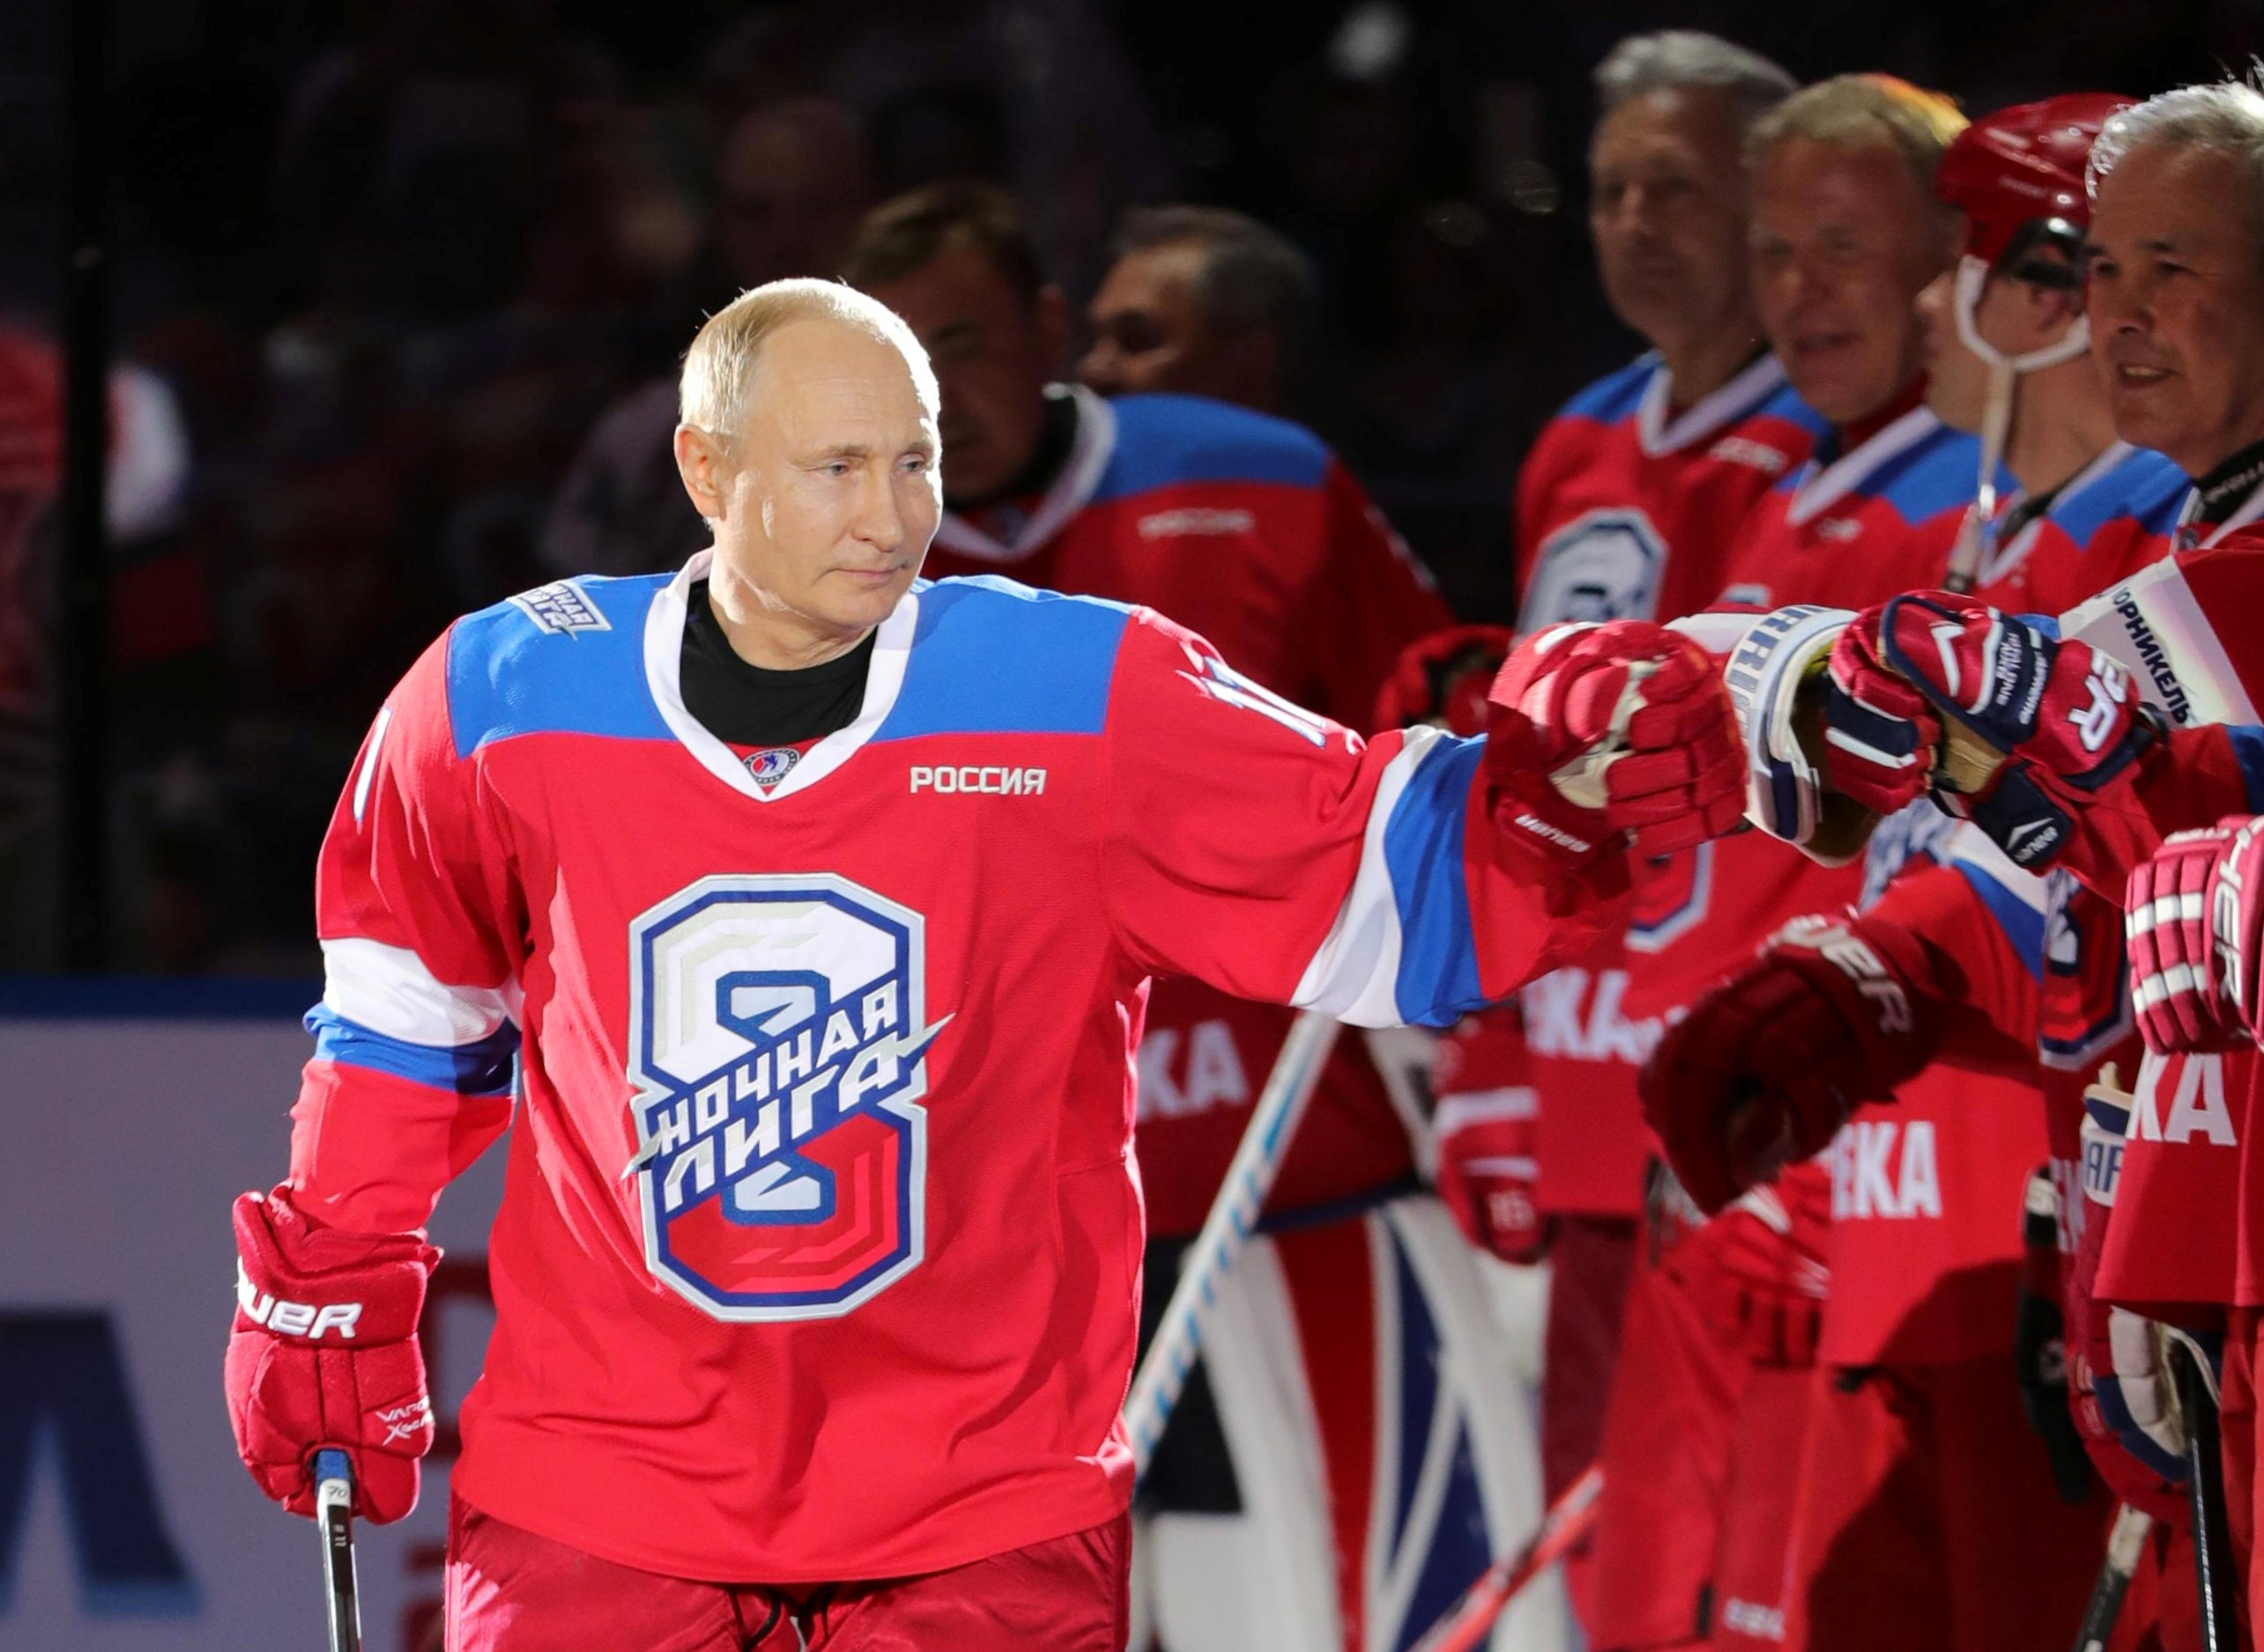 EN VIDEO: La matada que se echó Putin jugando al hockey sobre hielo que tiene a todos muertos de risa